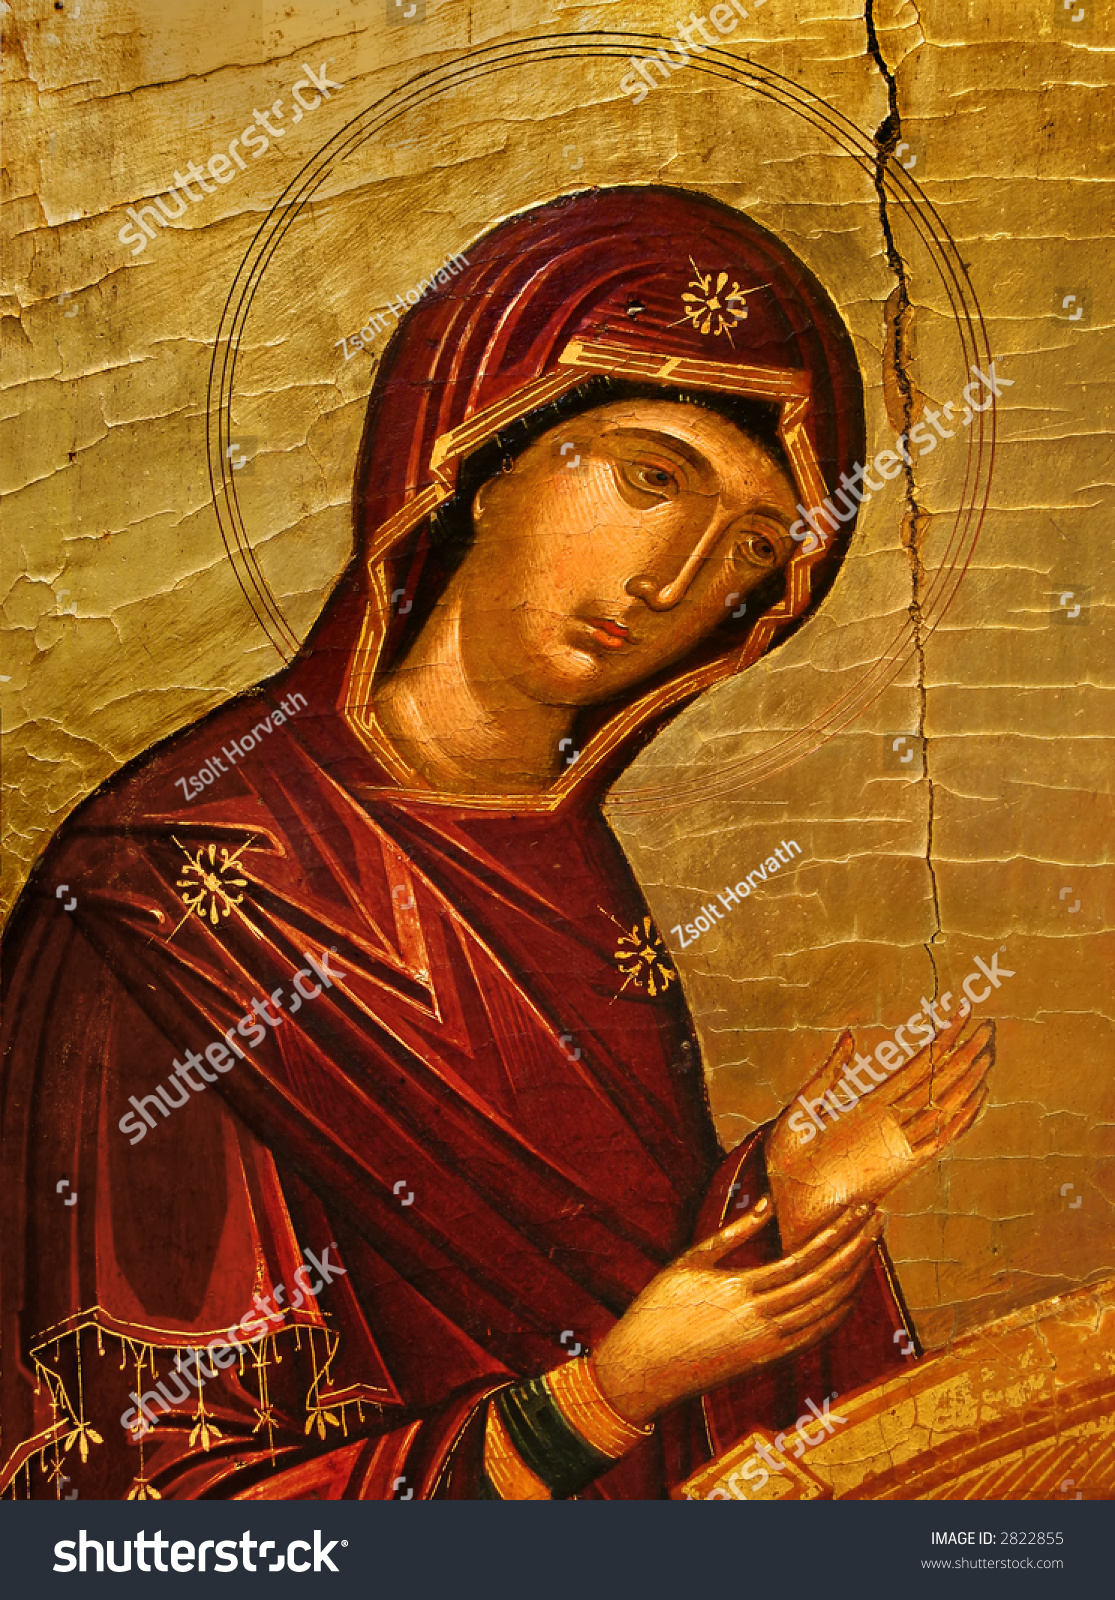 mittelalterliche kunst, jungfrau maria